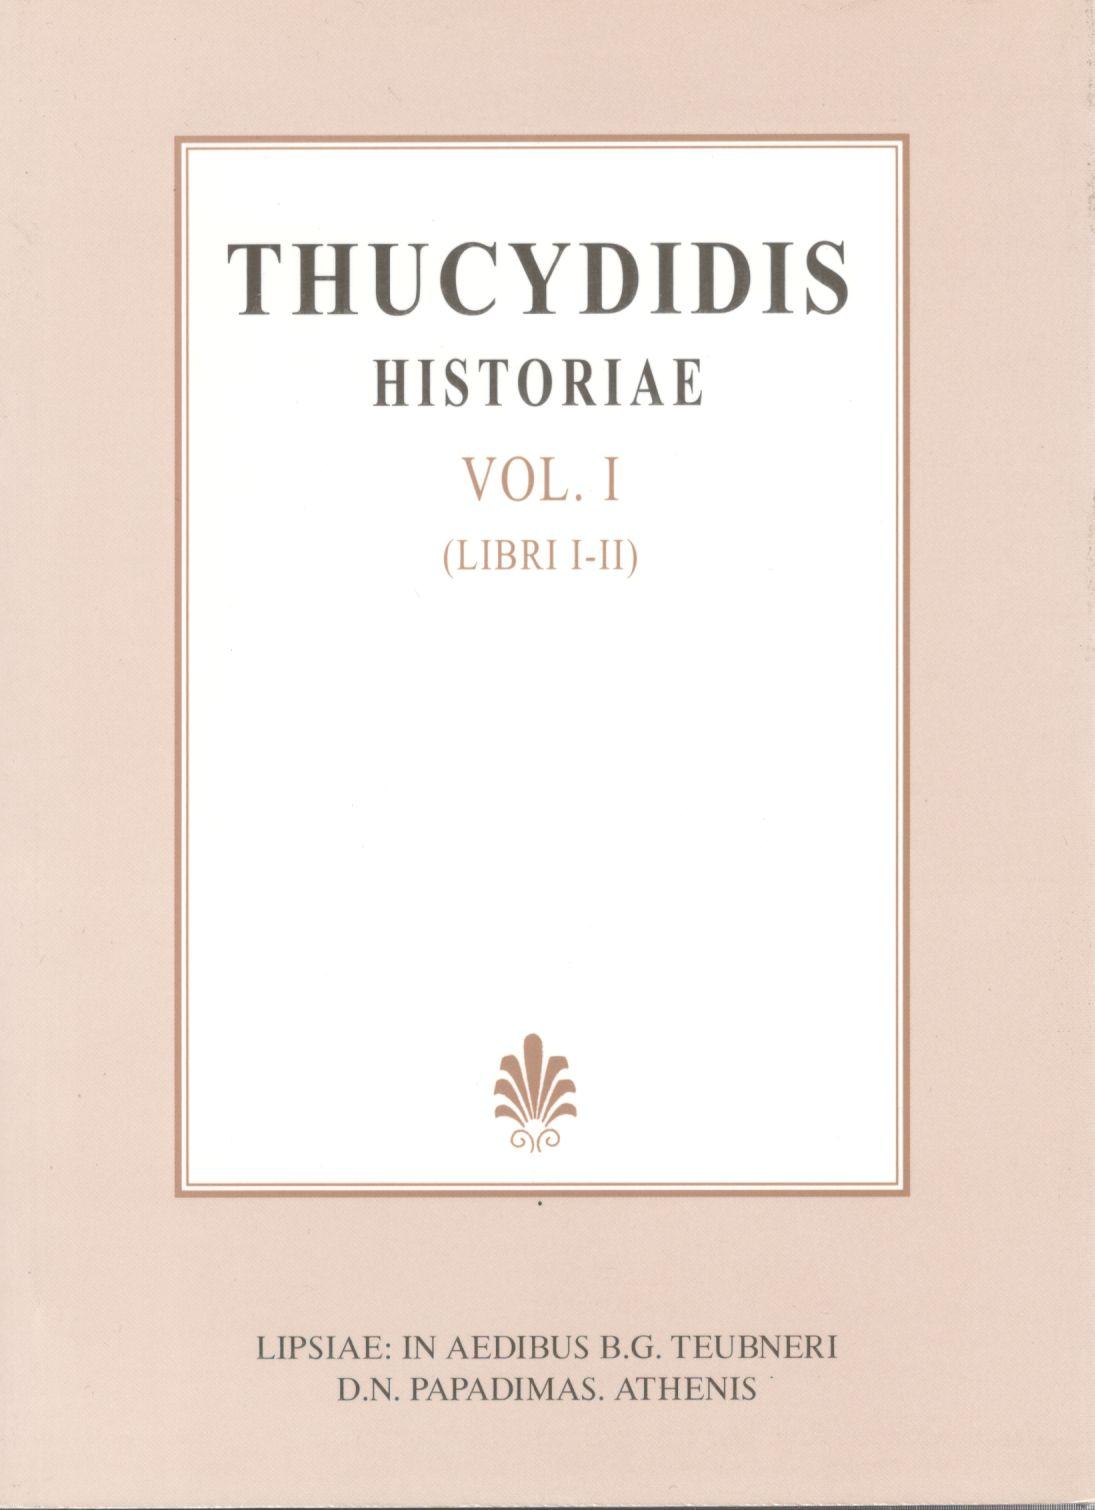 THUCYDIDIS, HISTORIAE, VOL. I, LIBRI I-II (ΘΟΥΚΥΔΙΔΟΥ, ΙΣΤΟΡΙΑΙ, Τ. Α